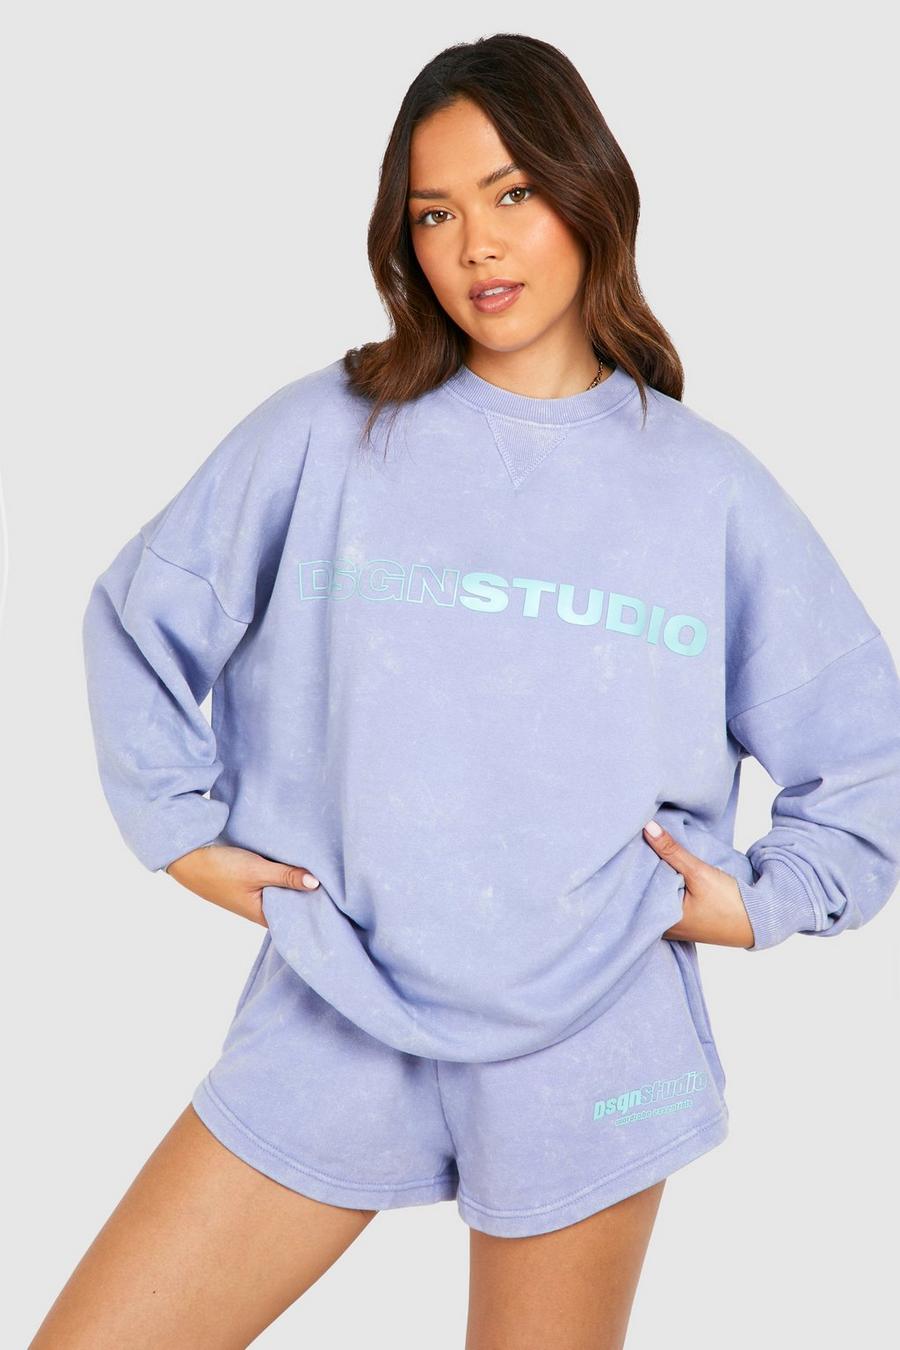 Oversize Sweatshirt mit Dsgn Studio Print, Blue